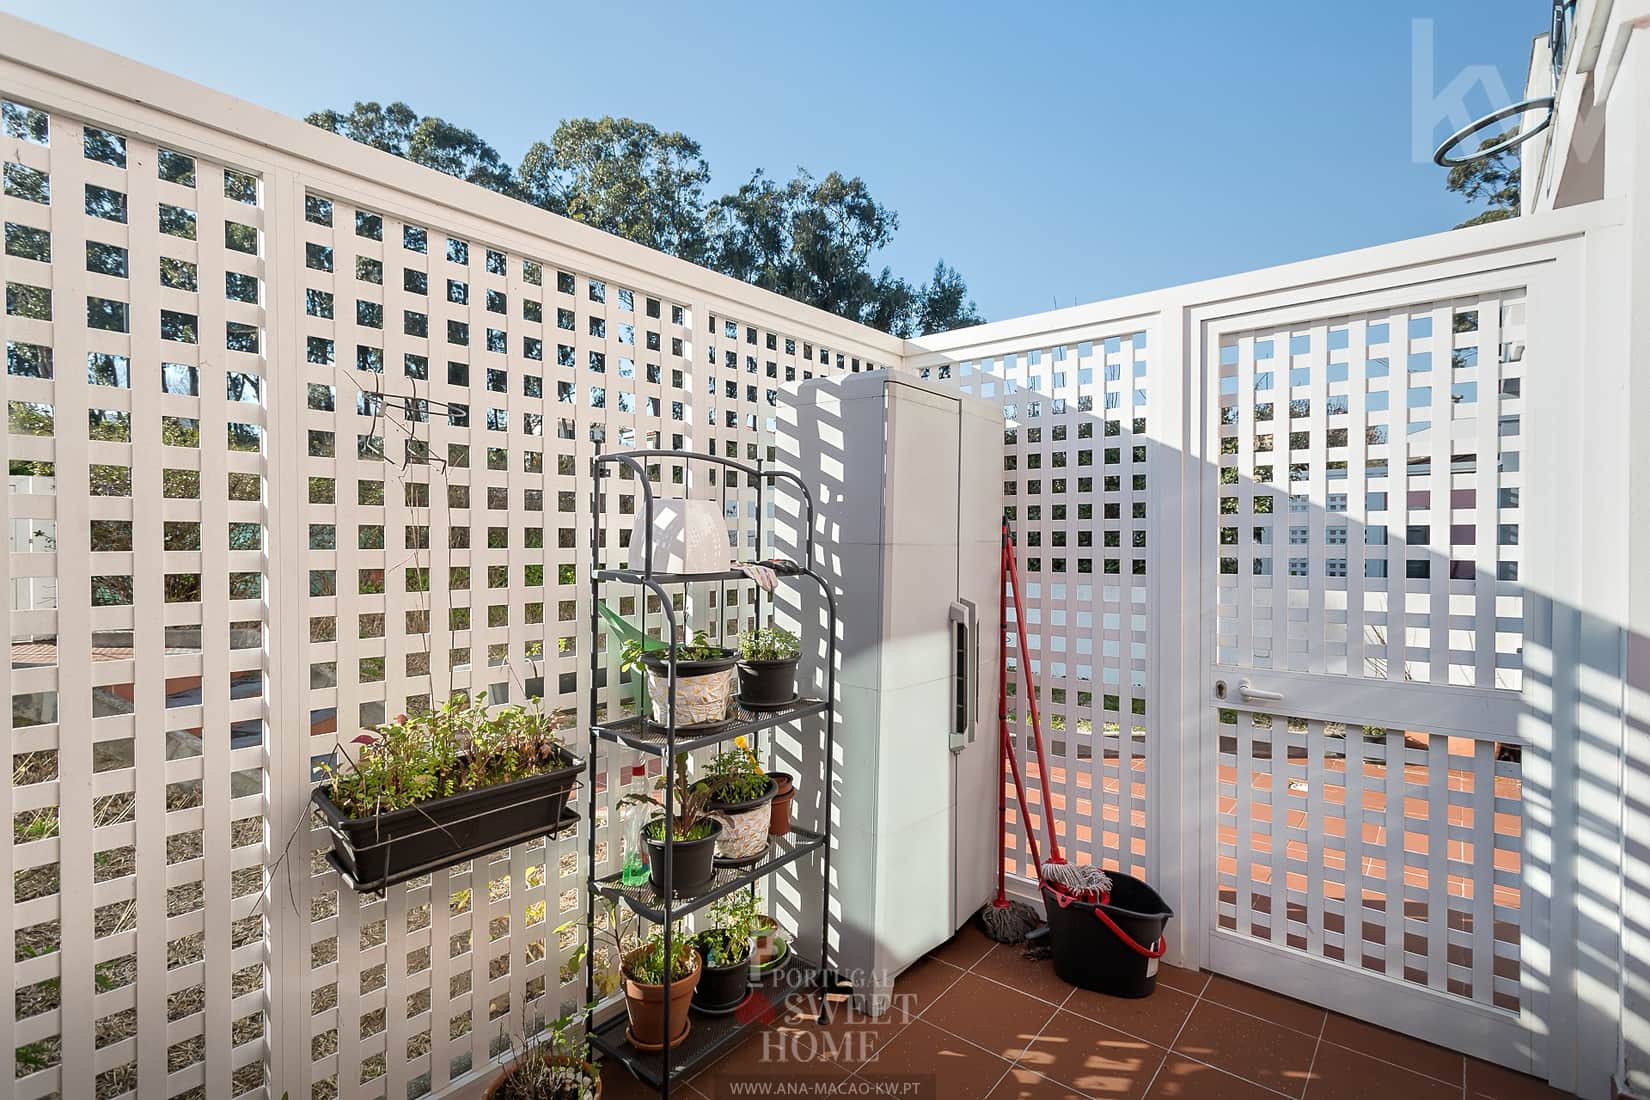 Terrasse (14 m²) intégrée dans un grand patio avec jardin (56 m²)